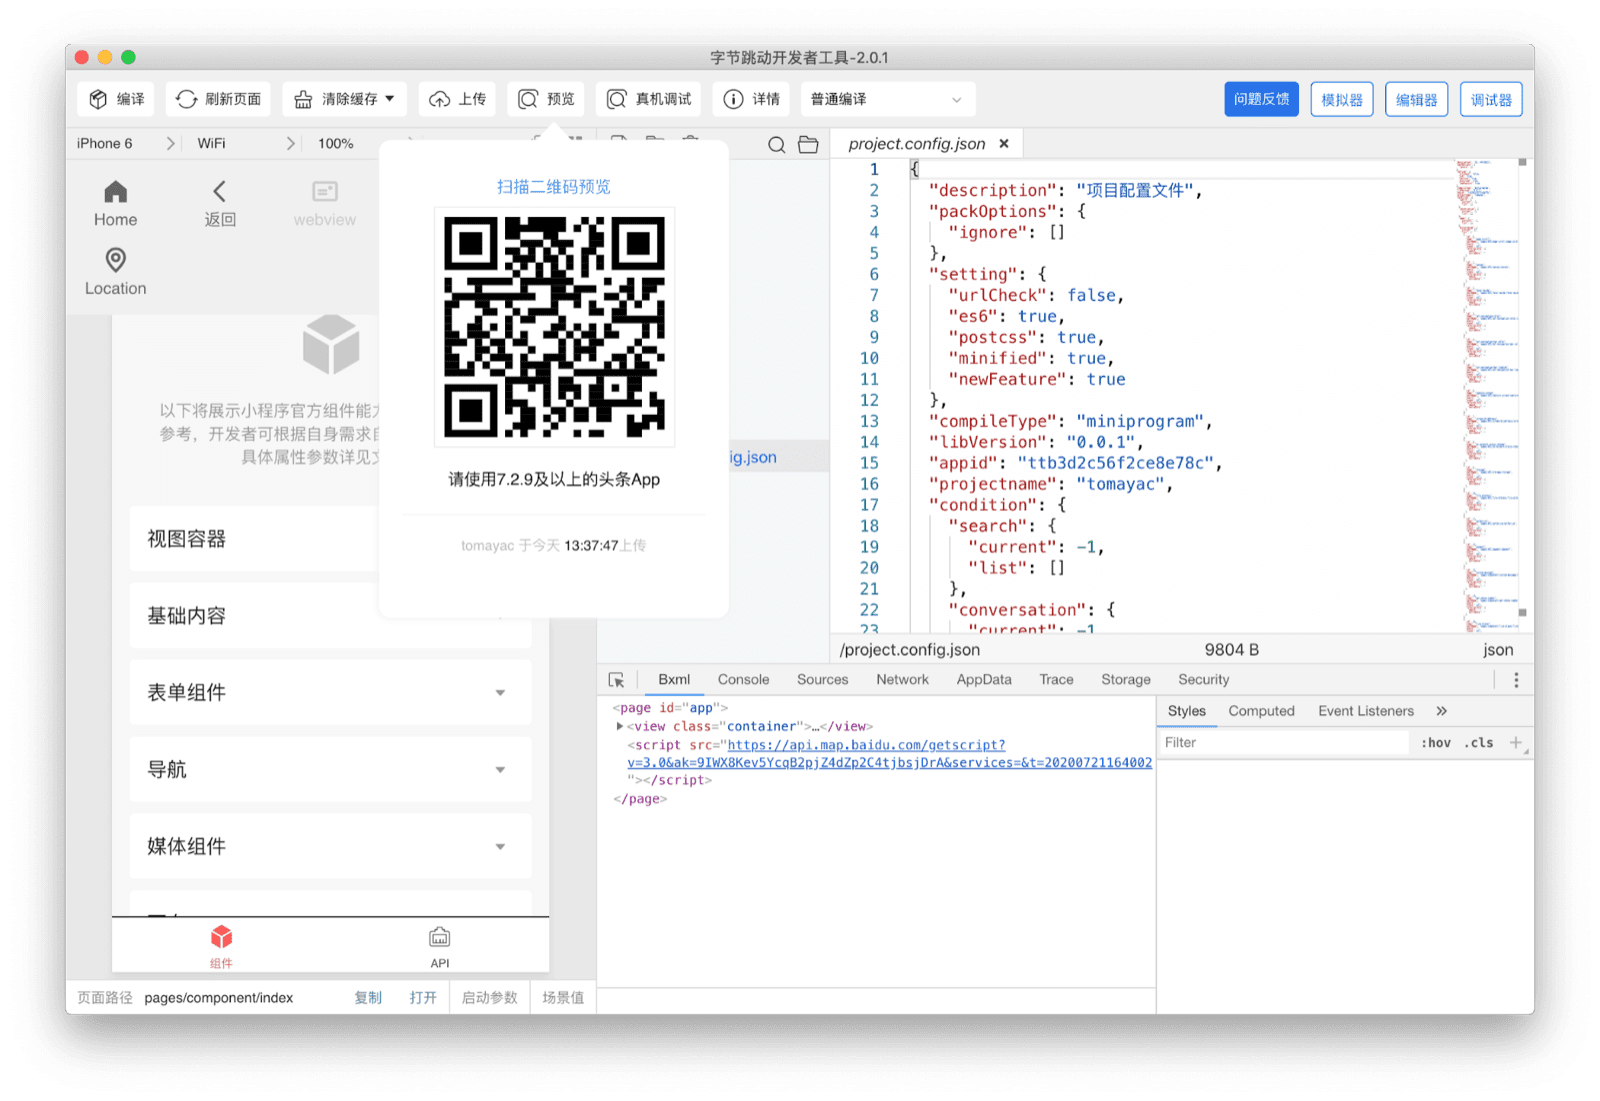 ByteDance DevTools, cihazında mevcut mini uygulamayı görmek için kullanıcının Douyin uygulamasıyla tarayabildiği bir QR kodu gösteriyor.